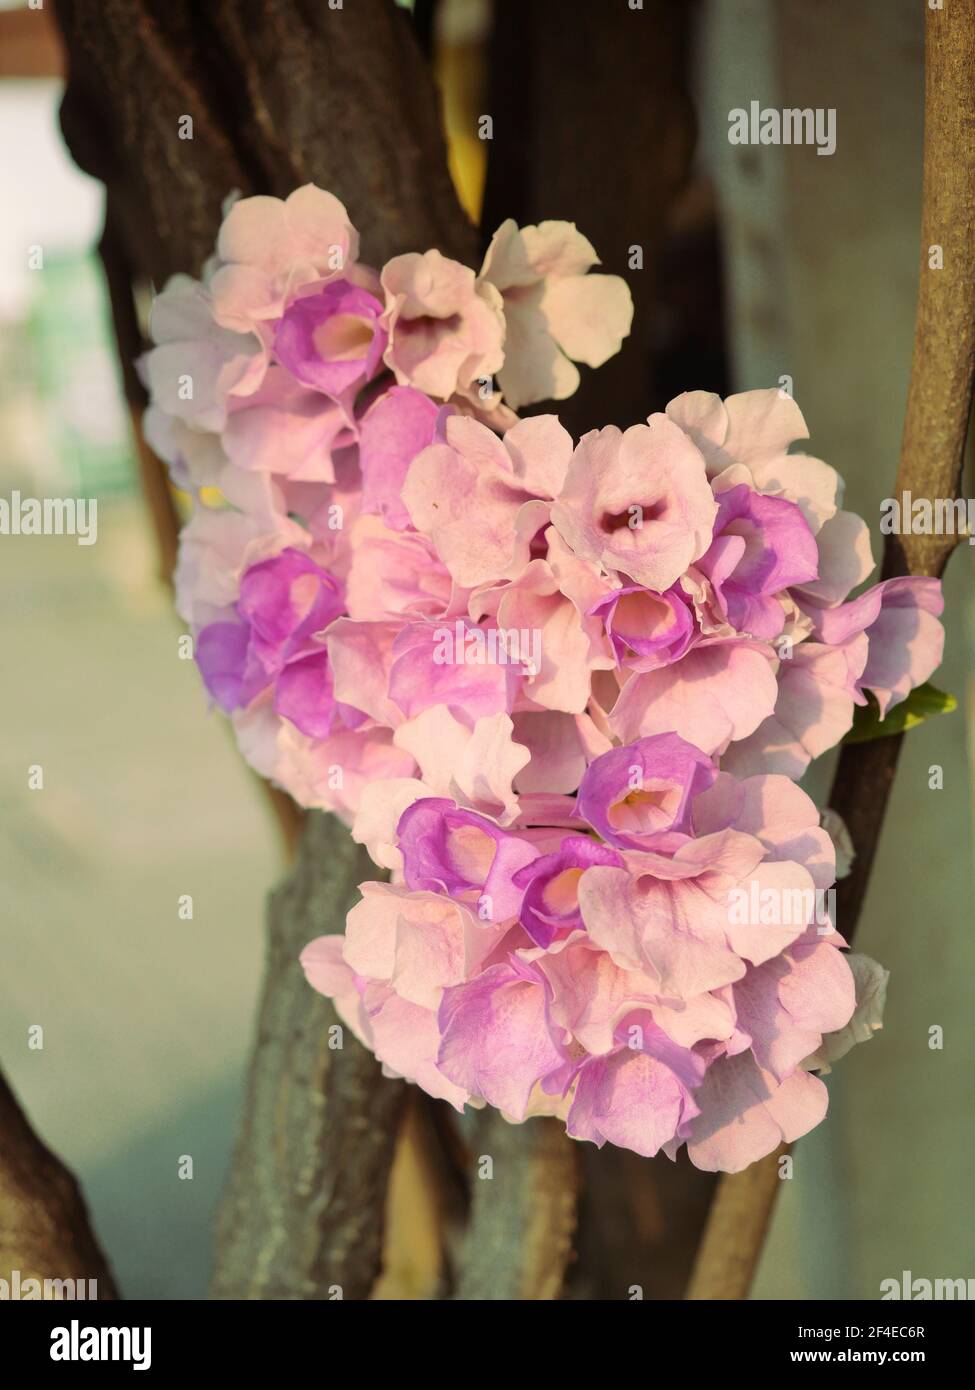 La vite dell'aglio ( Mansoos alliacea ) fiorisce su pianta dell'albero, petali viola e rosa dei fiori tropicali Foto Stock